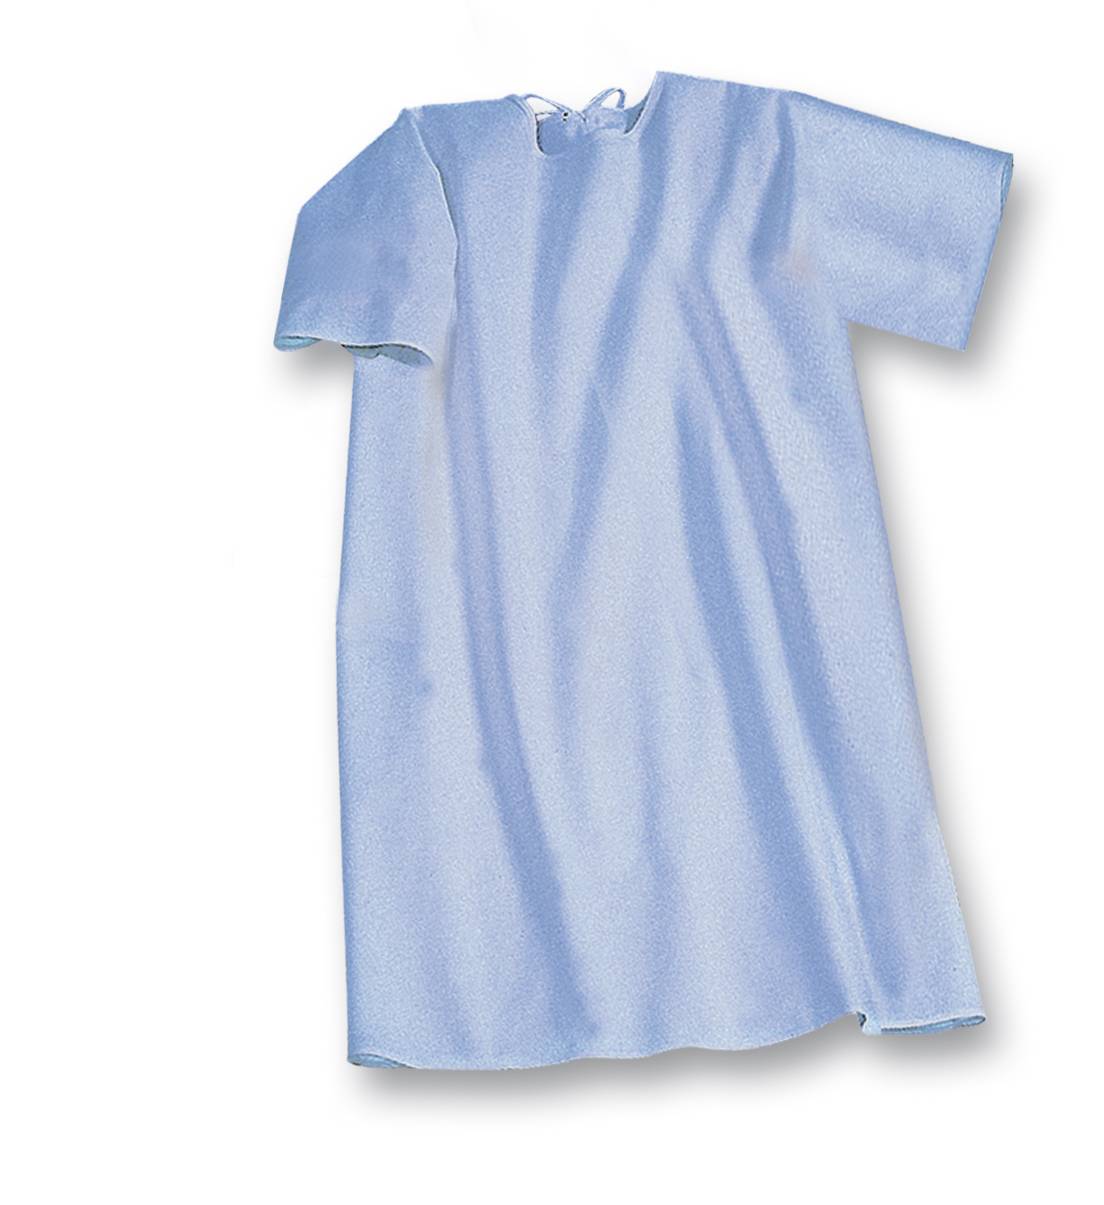 Pflegeprodukte Suprima Pflegehemd Baumwolle zum Binden - Langarm Nr. 4072 verschiedene Größen Suprima guenstig online kaufen bei VIDIMA